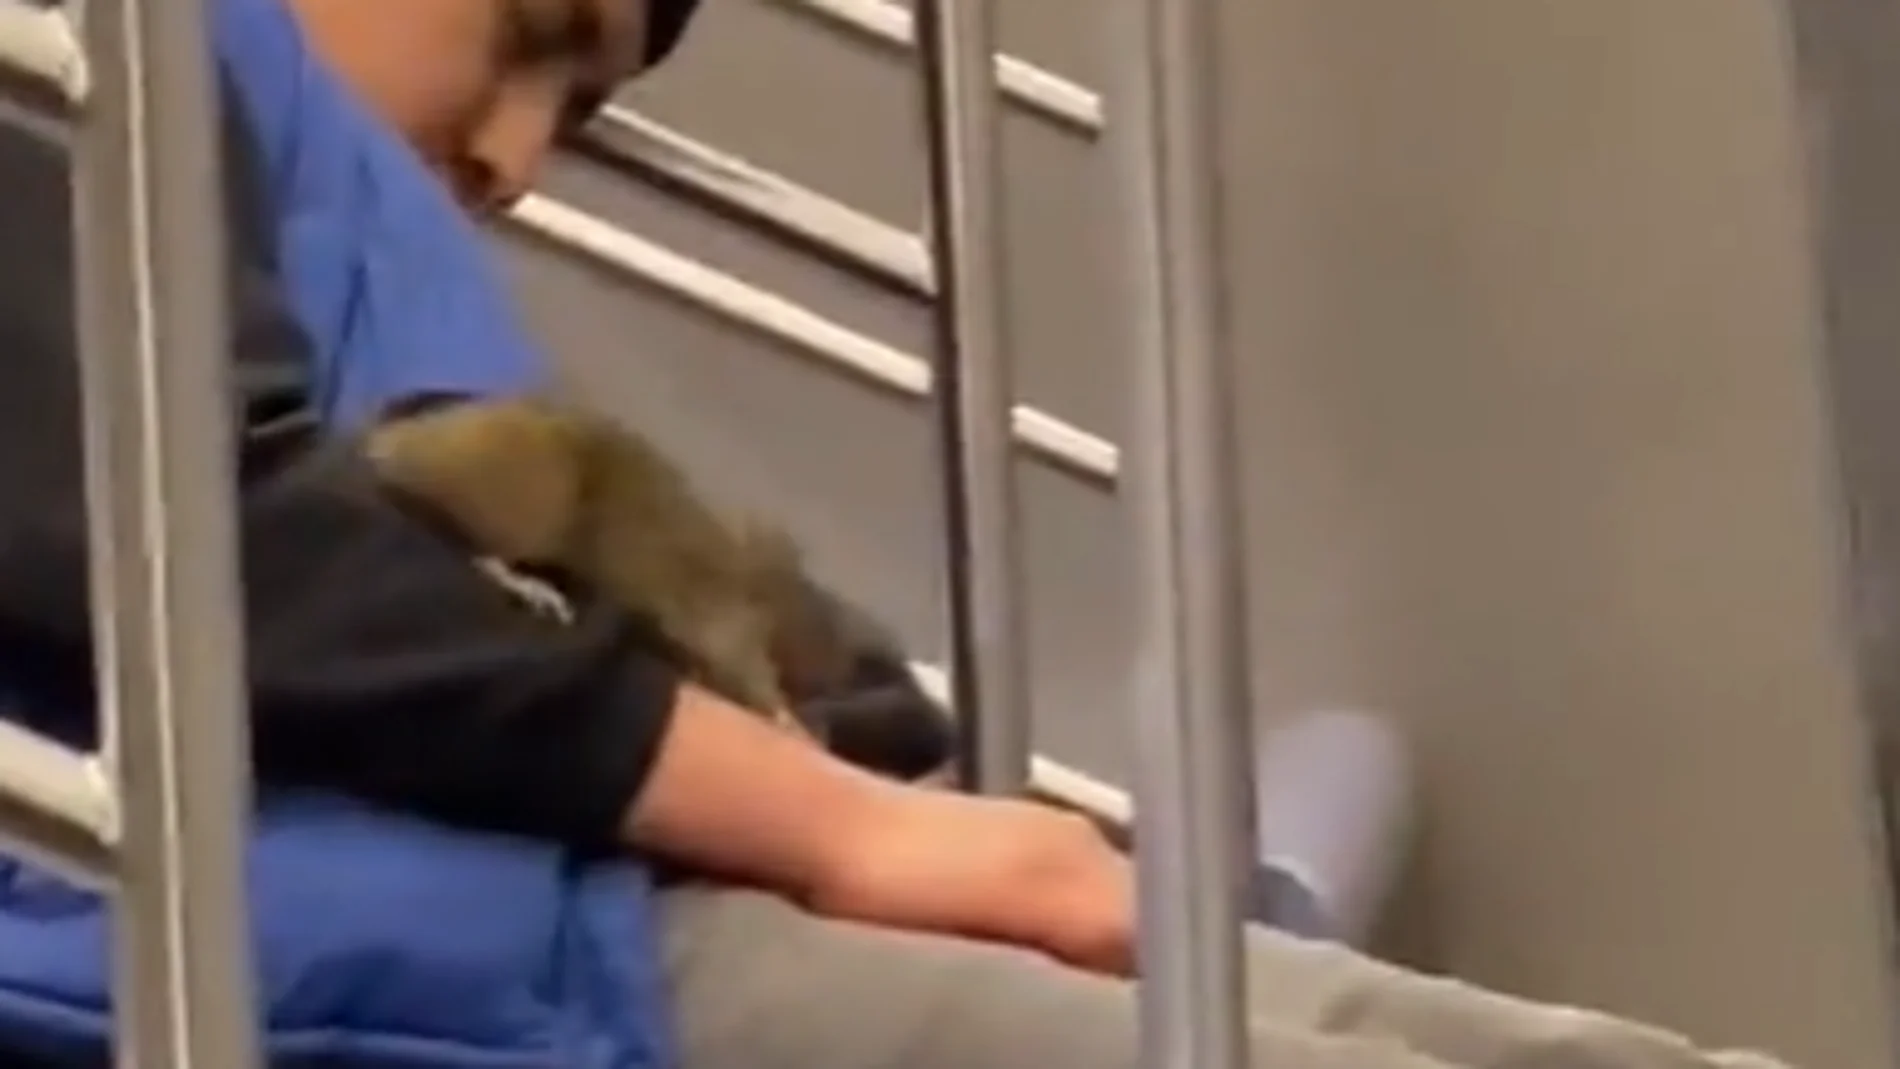 Una rata interrumpe el sueño de un joven en el metro de Nueva York